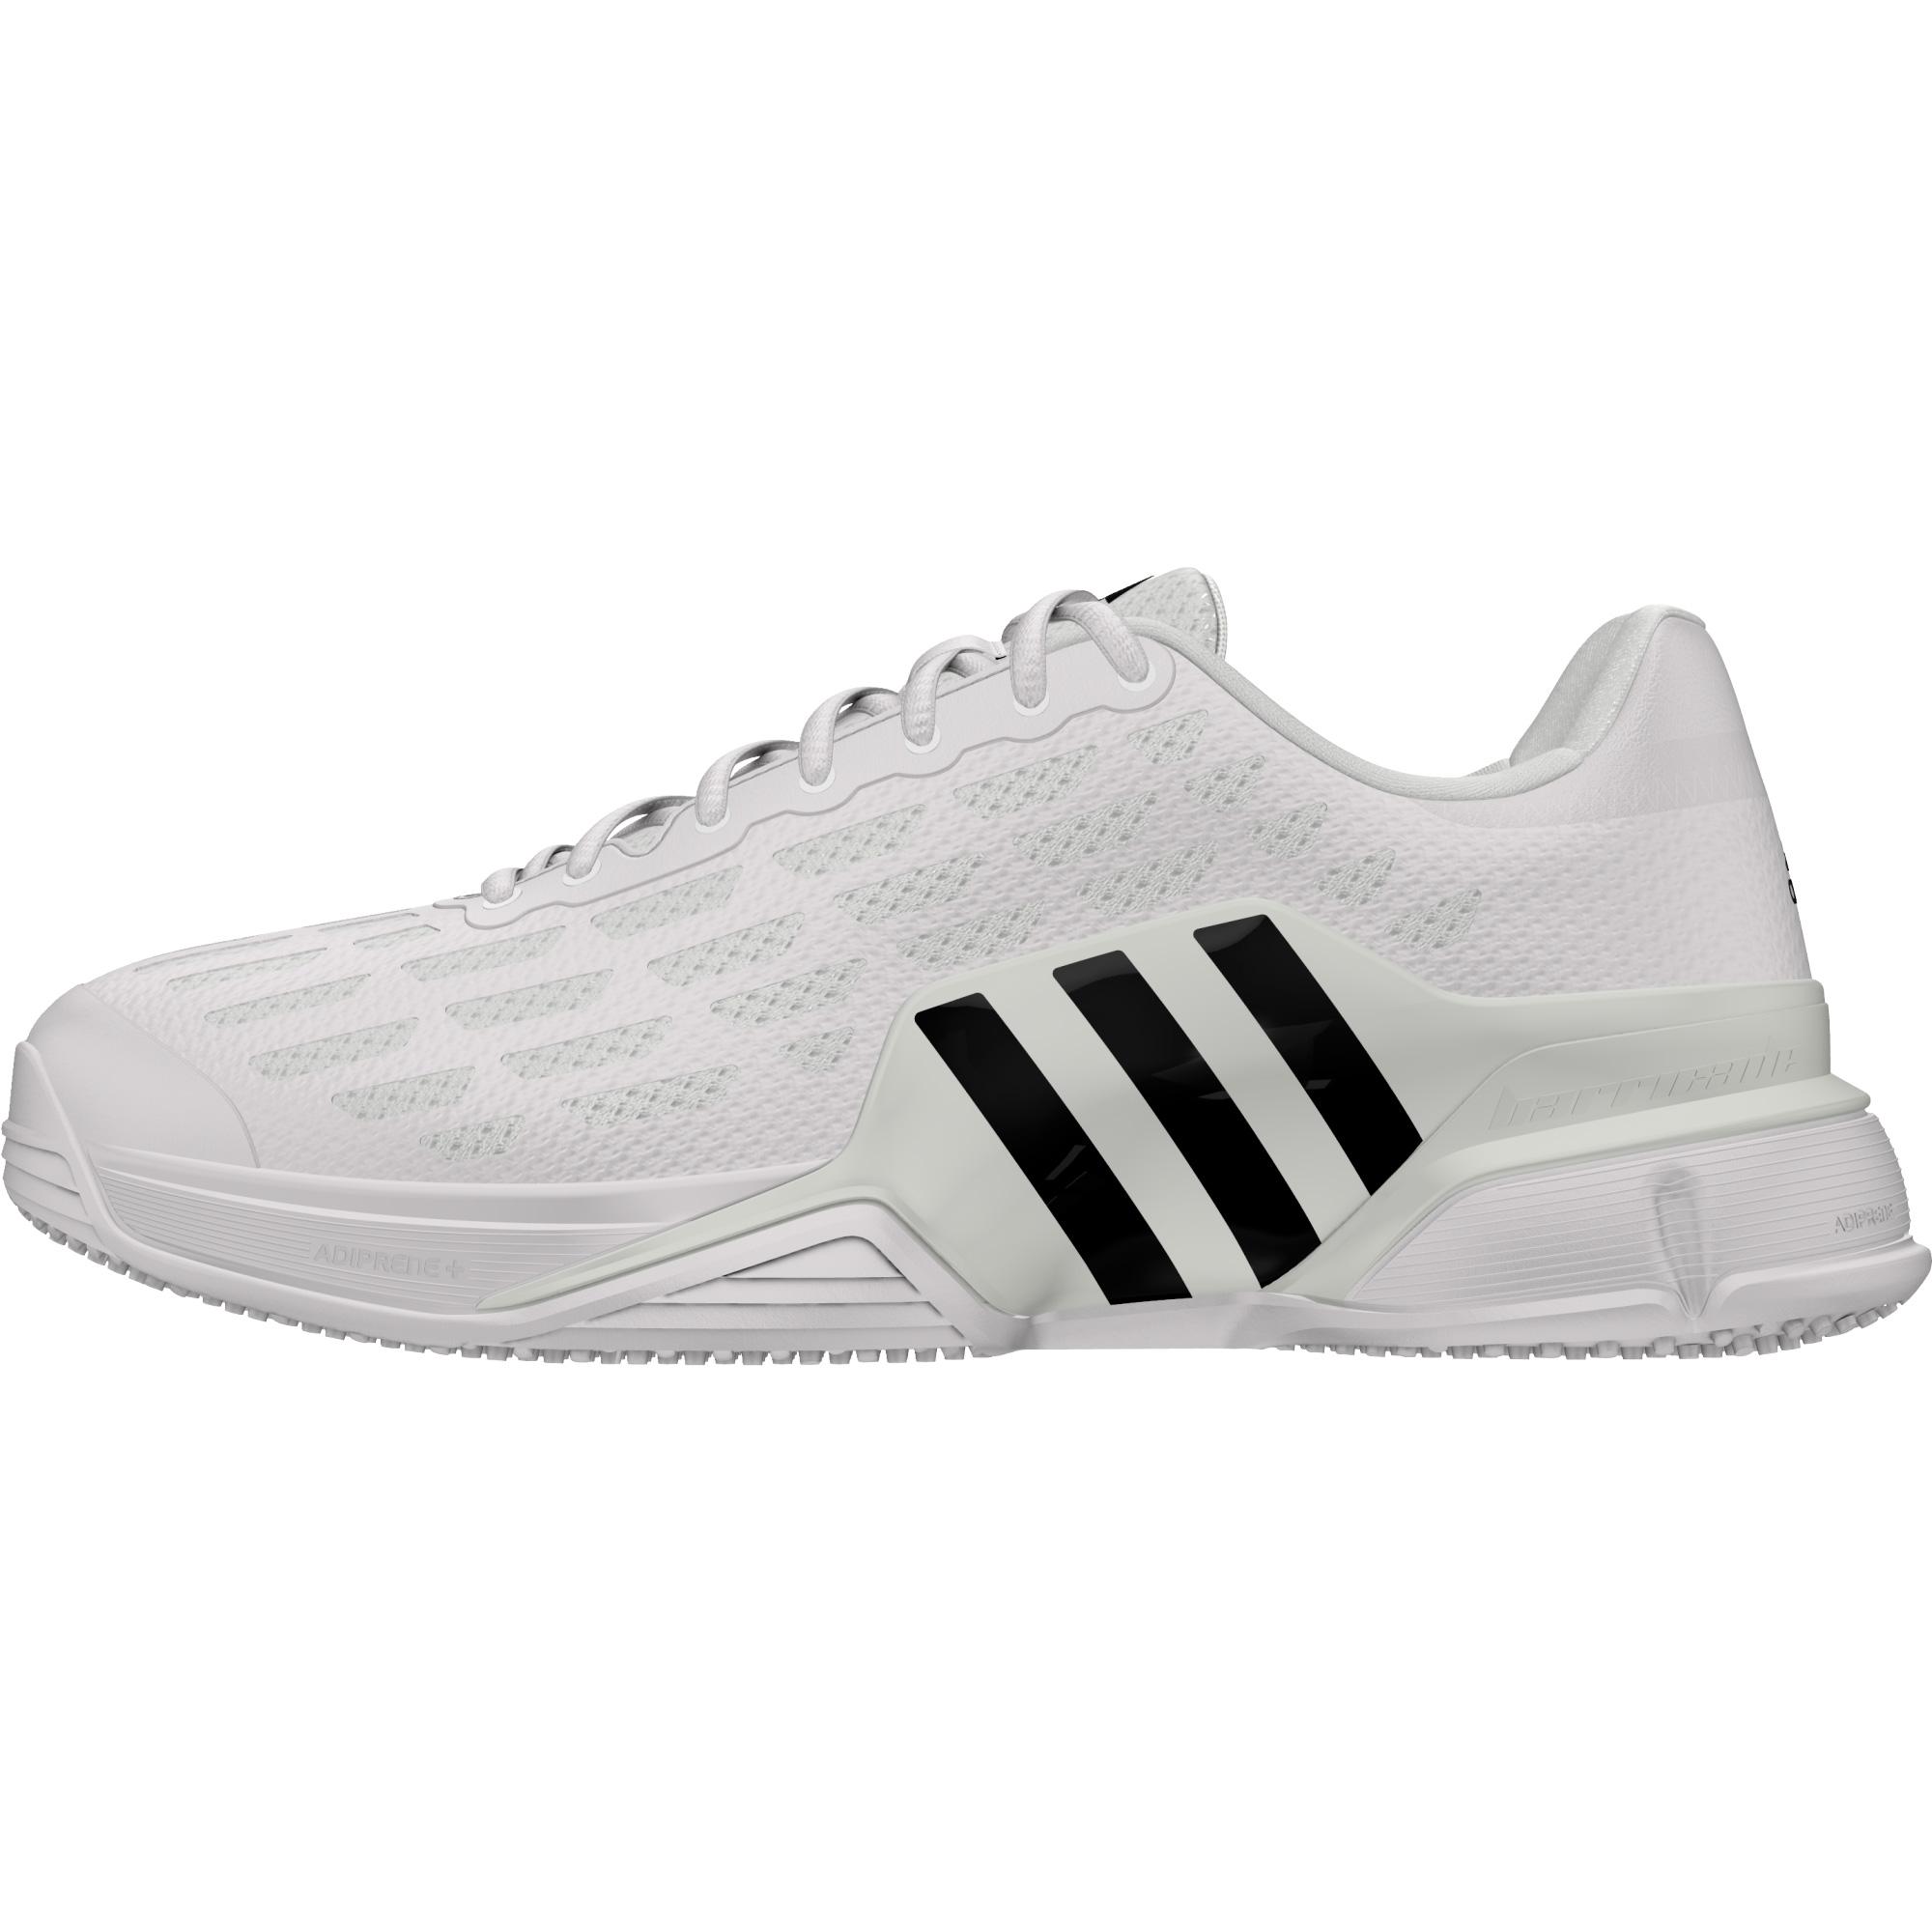 Adidas Mens Barricade Grass Court Tennis Shoes - White - Tennisnuts.com